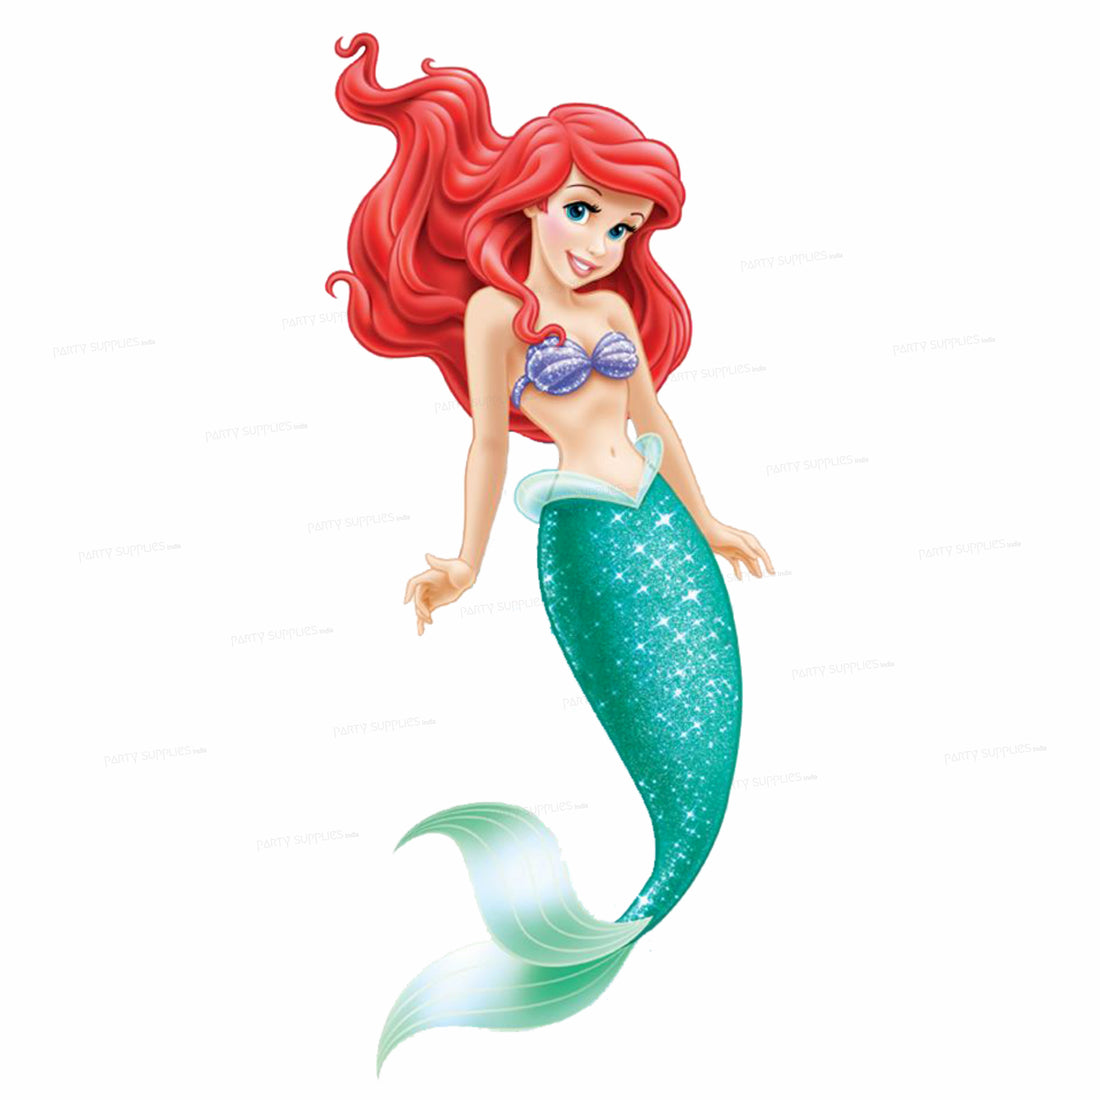 Mermaid Theme Semi-Girl Cutout